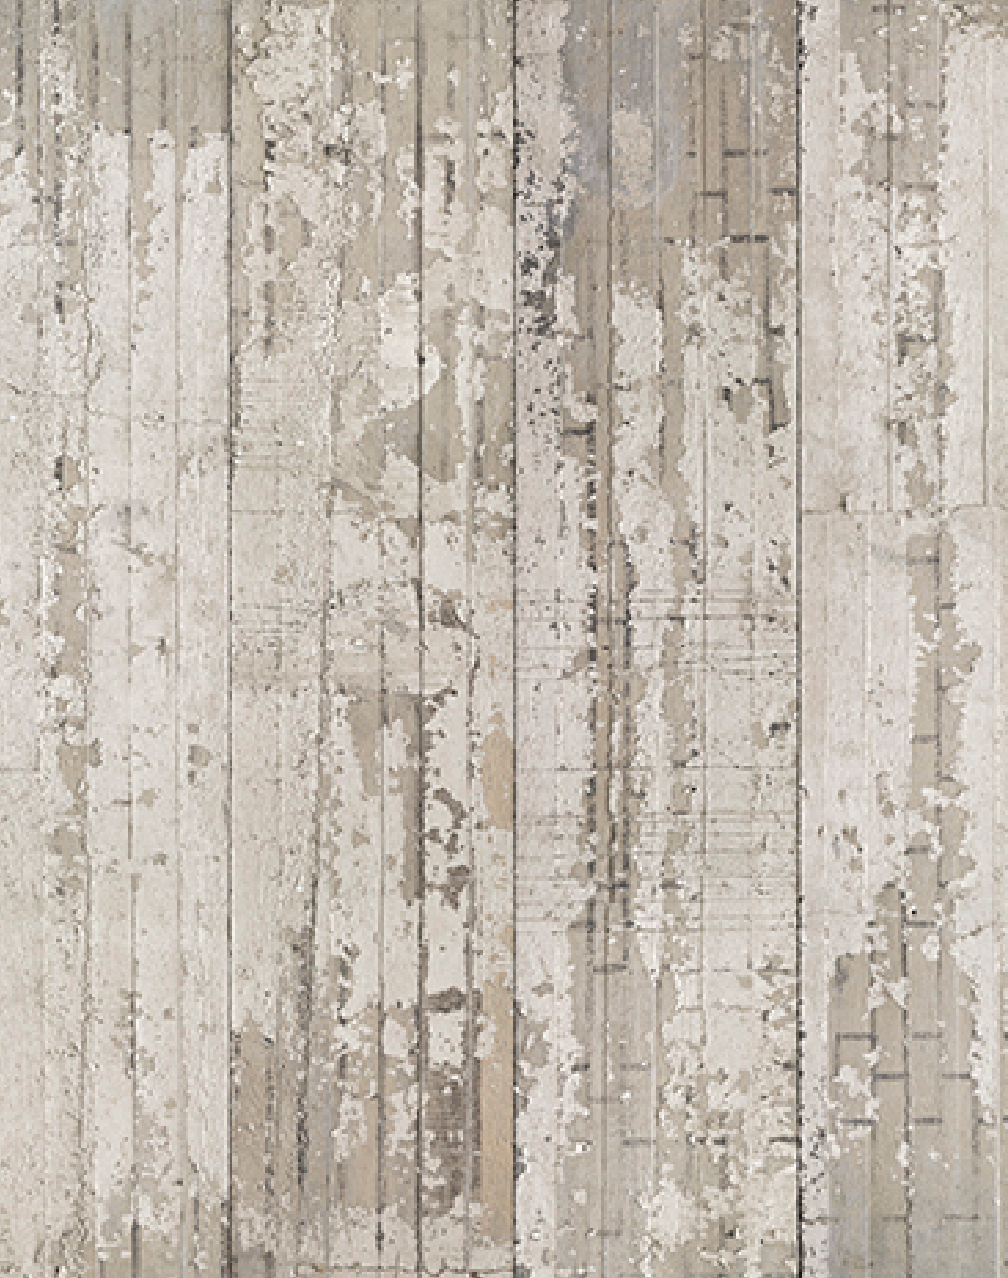 CON-06 Concrete Wallpaper by Piet Boon